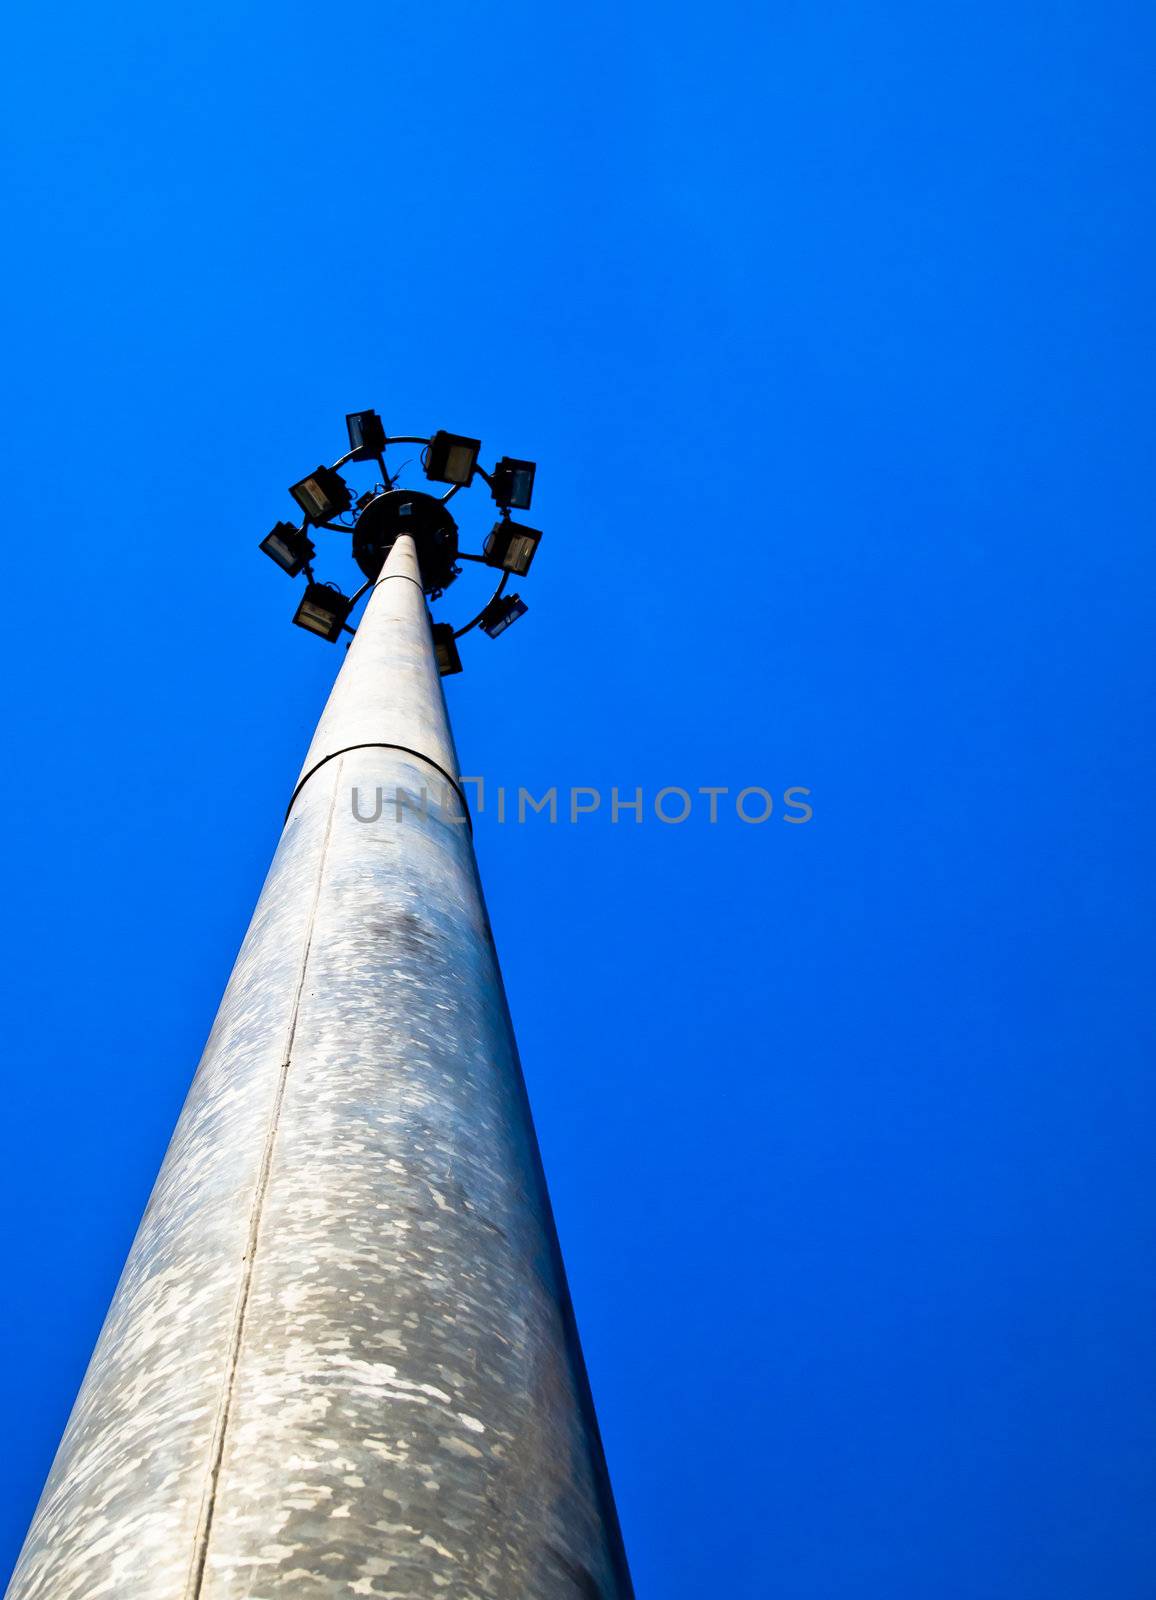 Lamp post with blue sky2 by gjeerawut